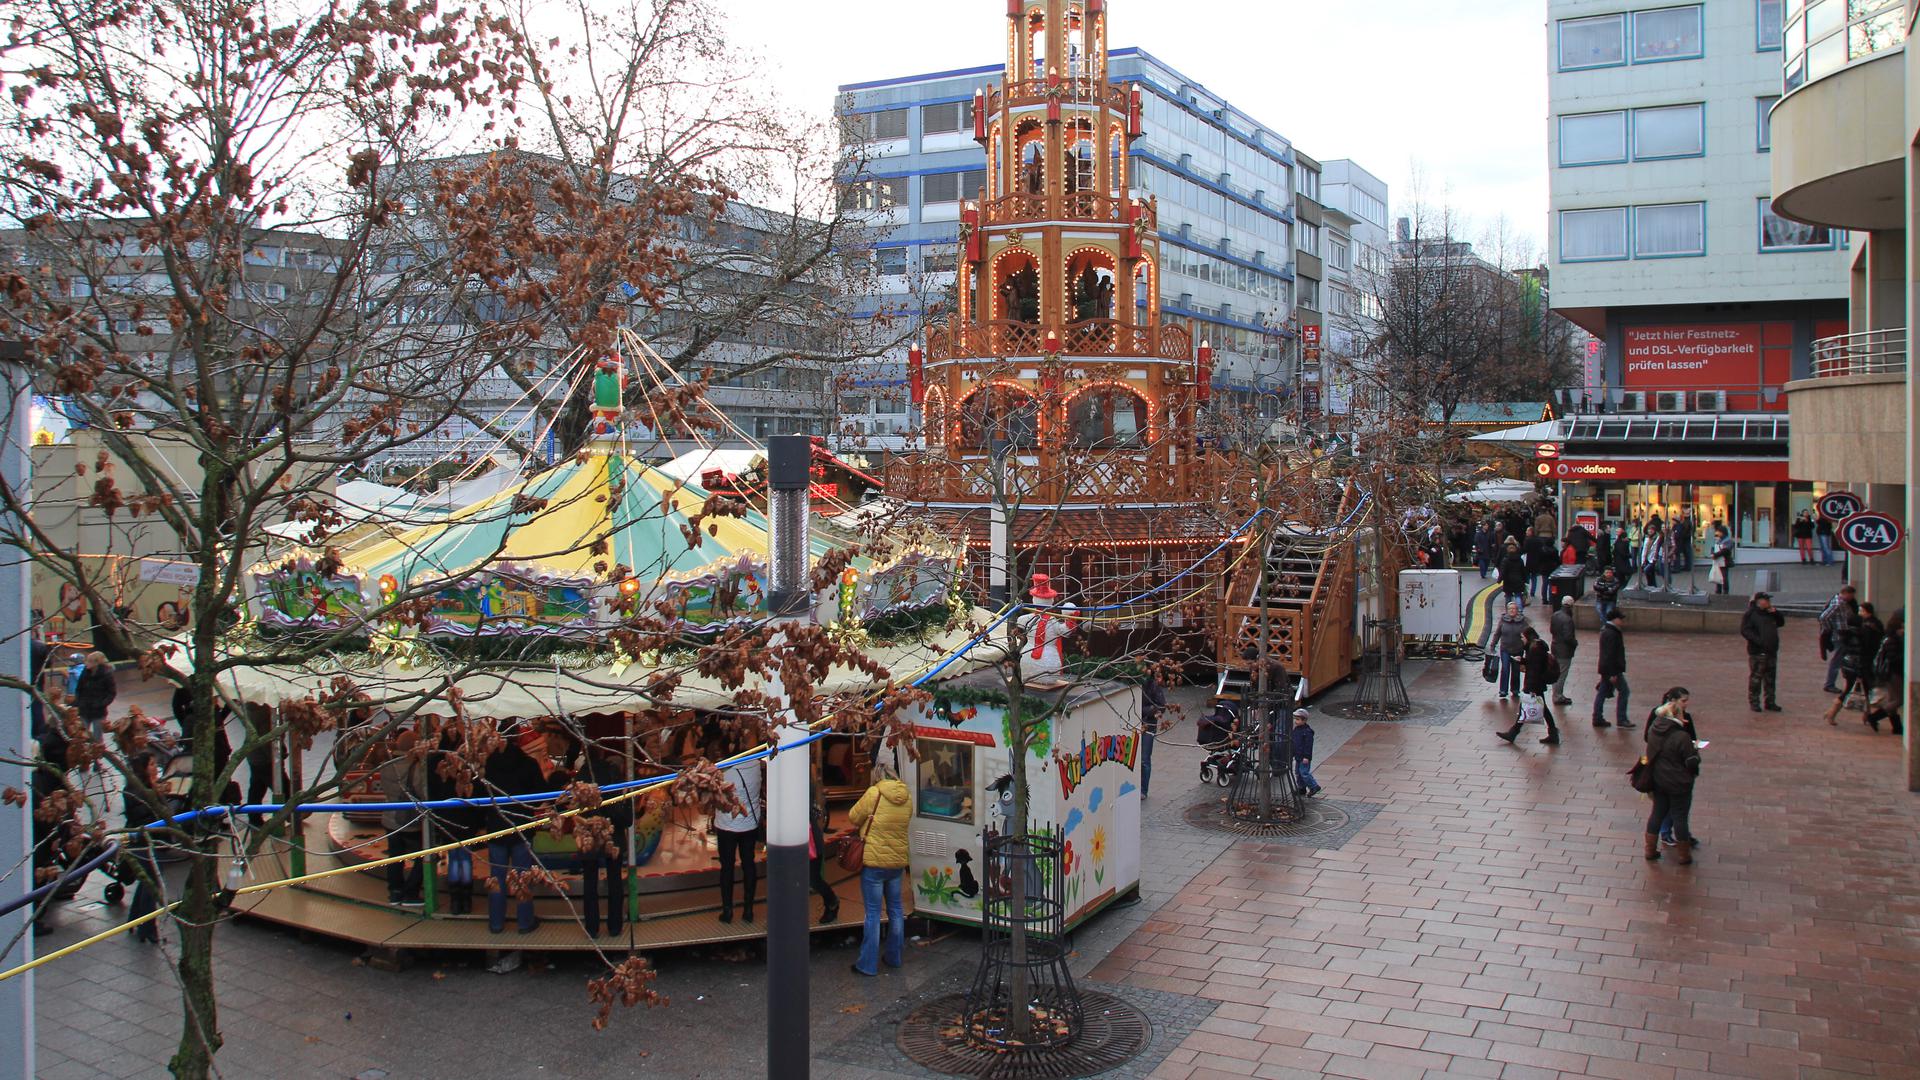 Er findet statt: Am 22. November öffnet der Weihnachtsmarkt in Pforzheim. Welche Regeln dann aber gelten, das ist noch immer unklar. Die Stadt Pforzheim will in dieser Woche Informationen dazu veröffentlichen.